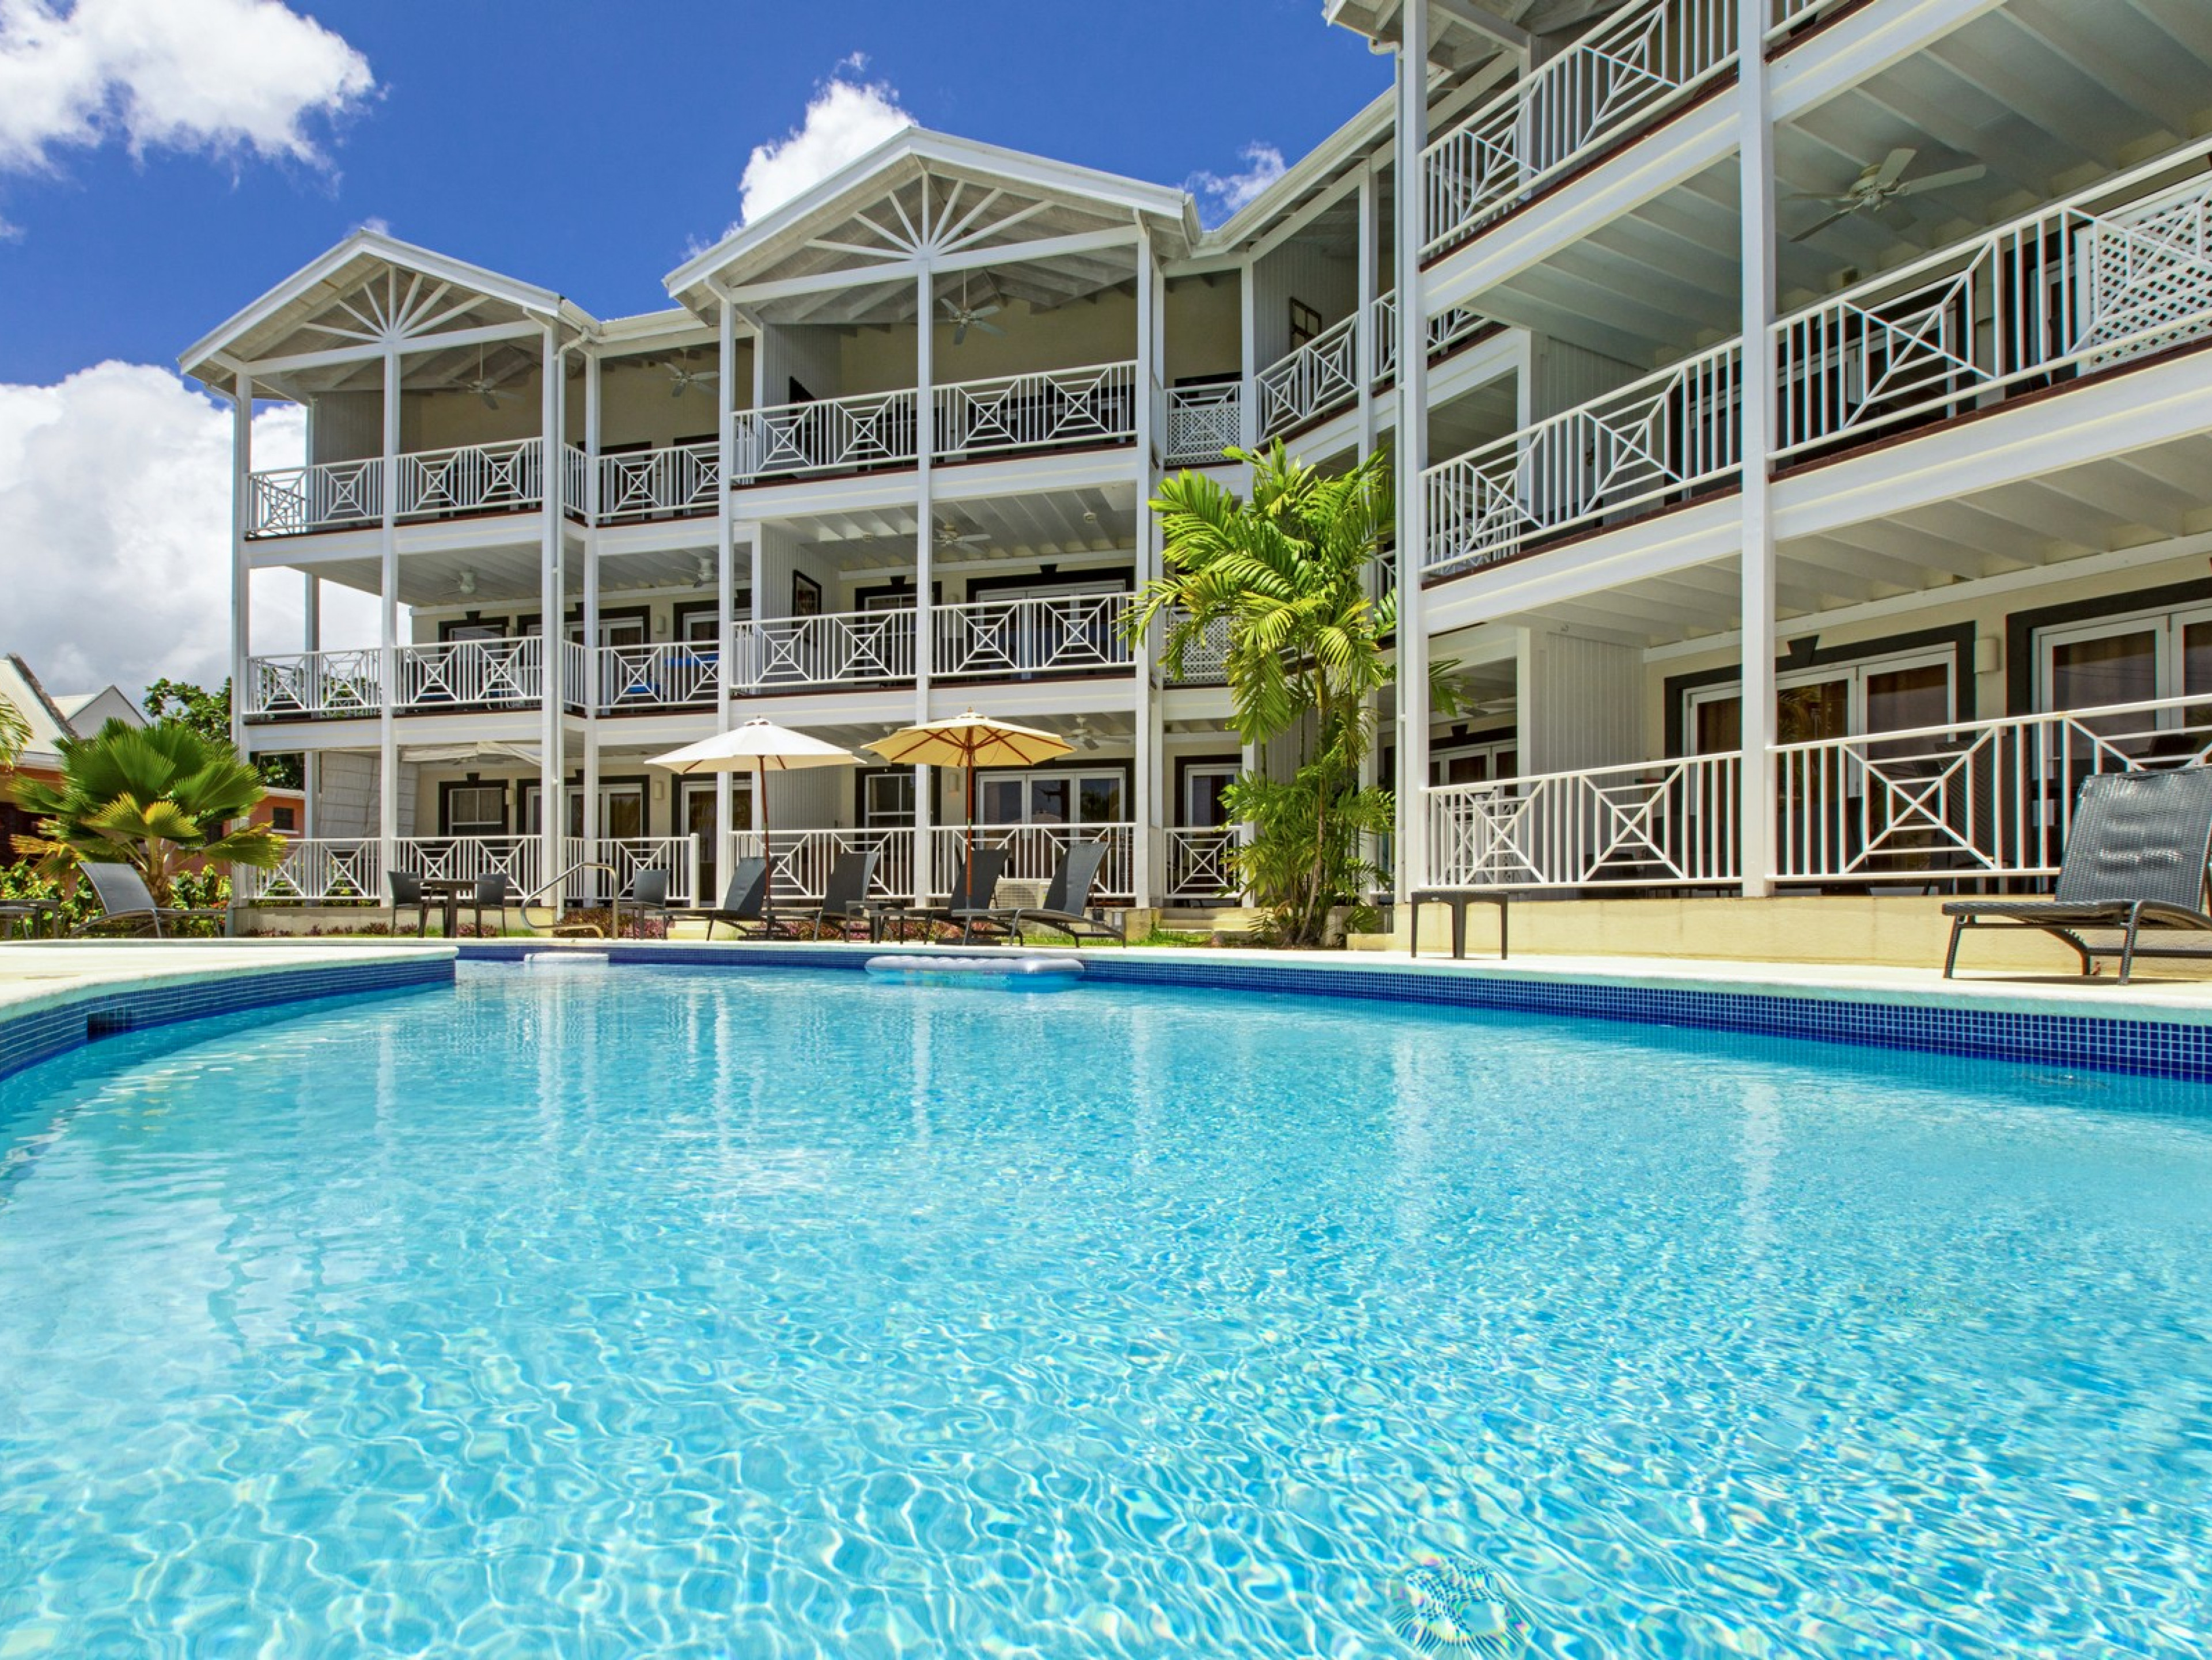 Lantana 2 - Weston - Weston Villas in St James, Barbados